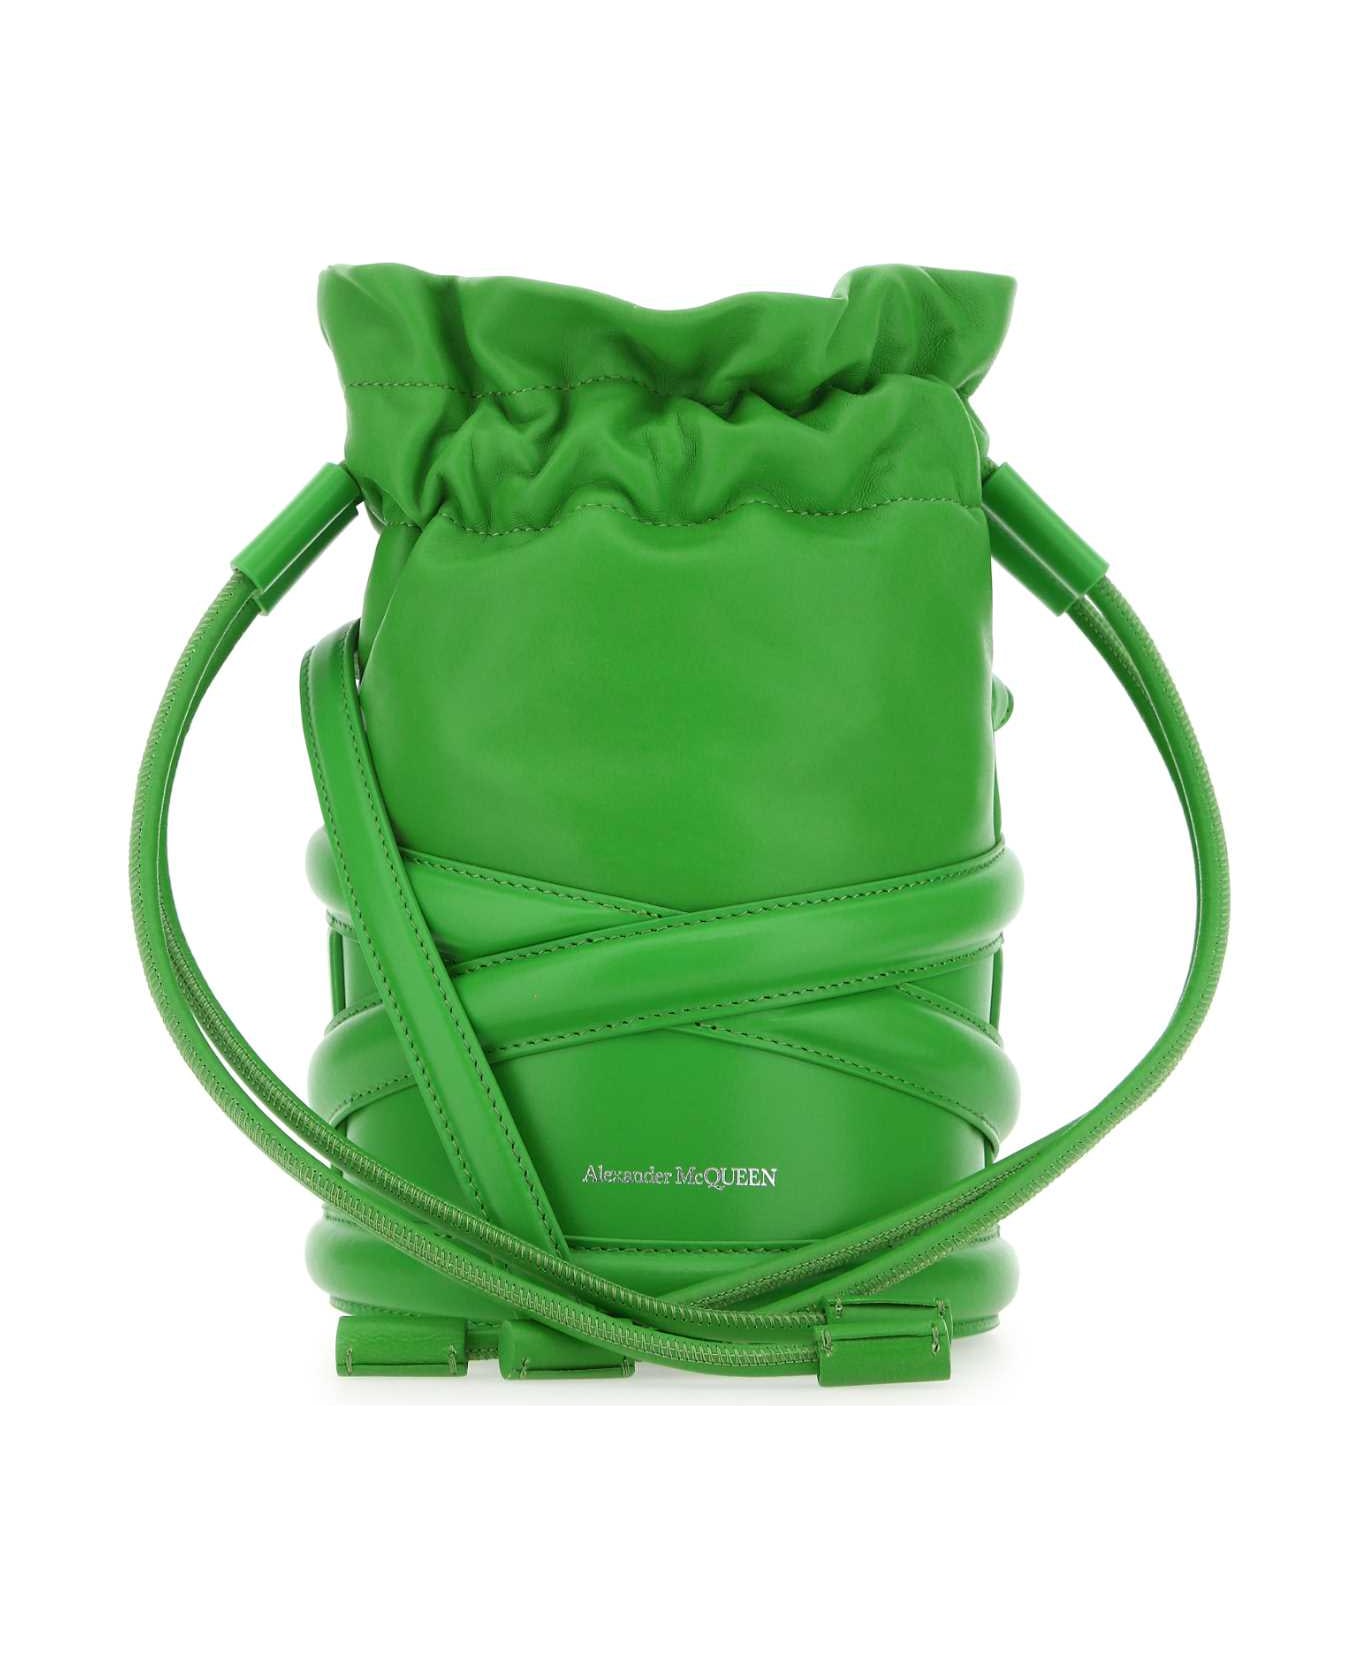 Alexander McQueen Grass Green Leather Bucket Bag - 3800 トートバッグ